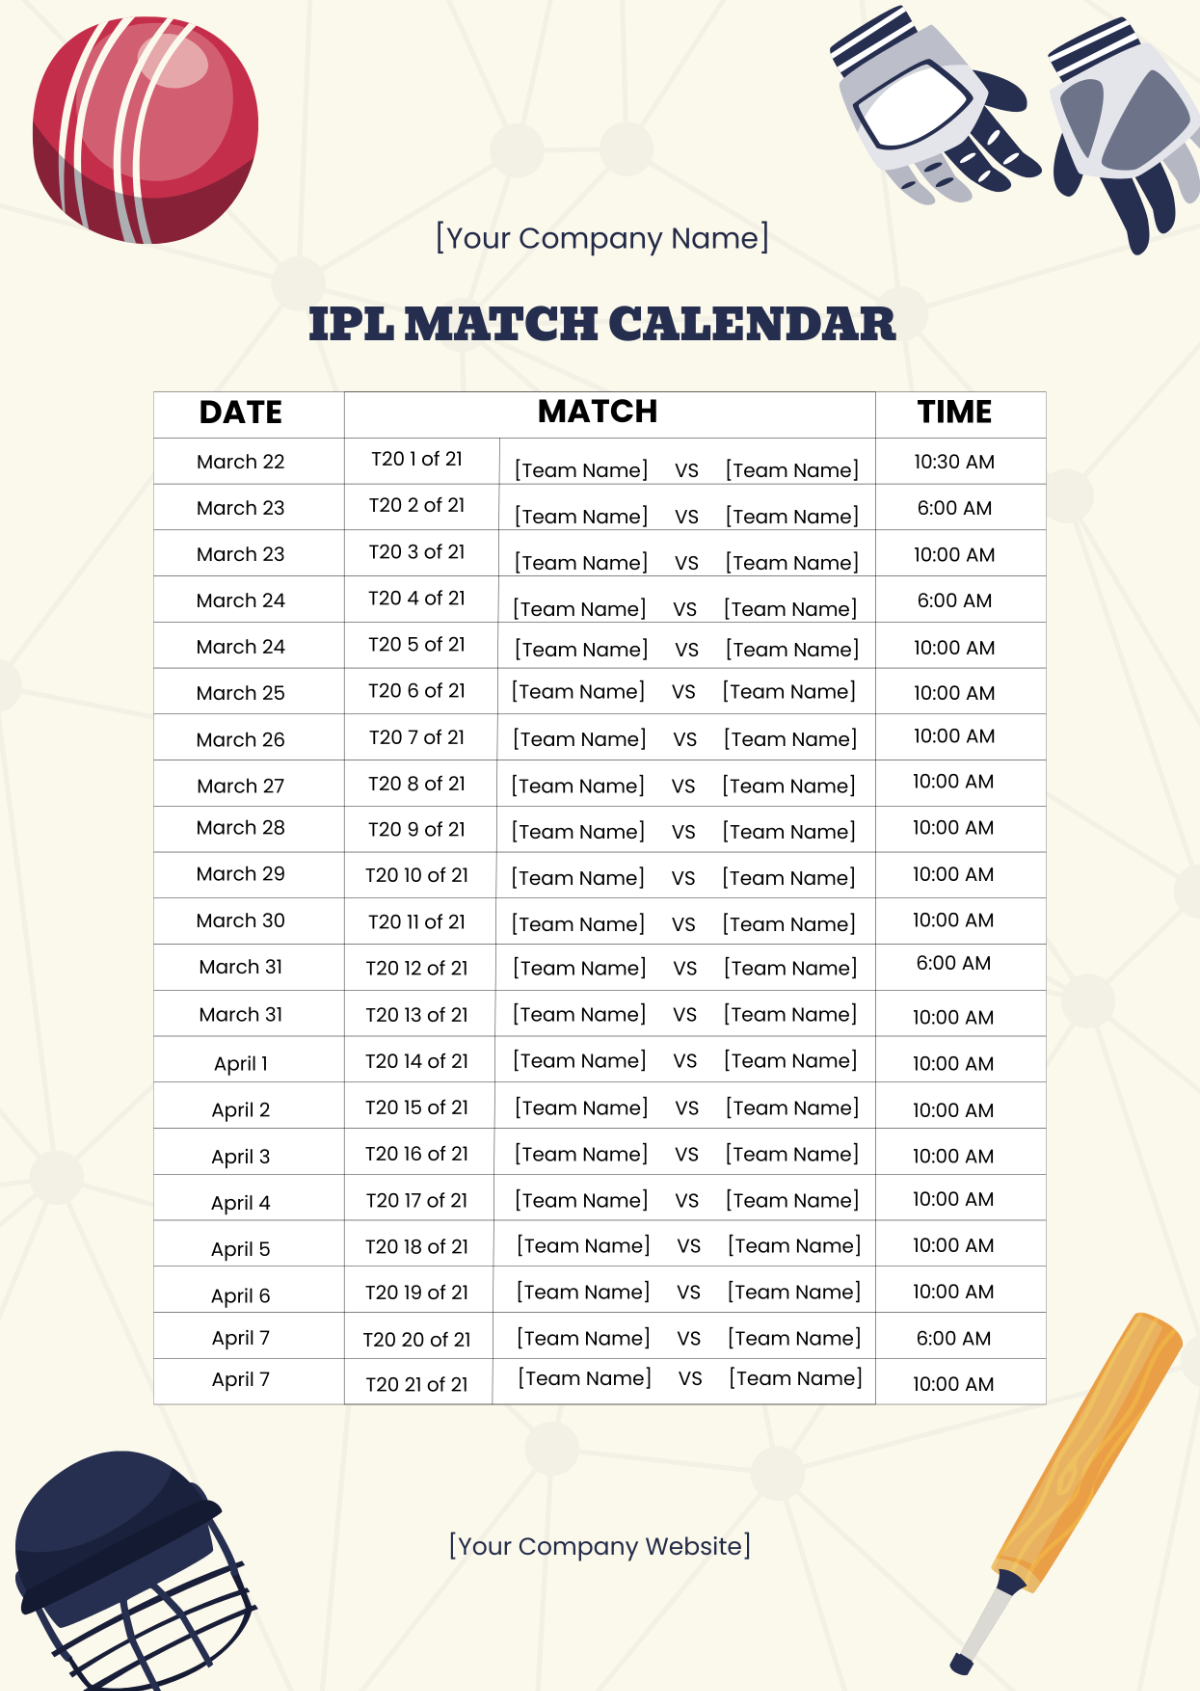 Free IPL Match Calendar Template